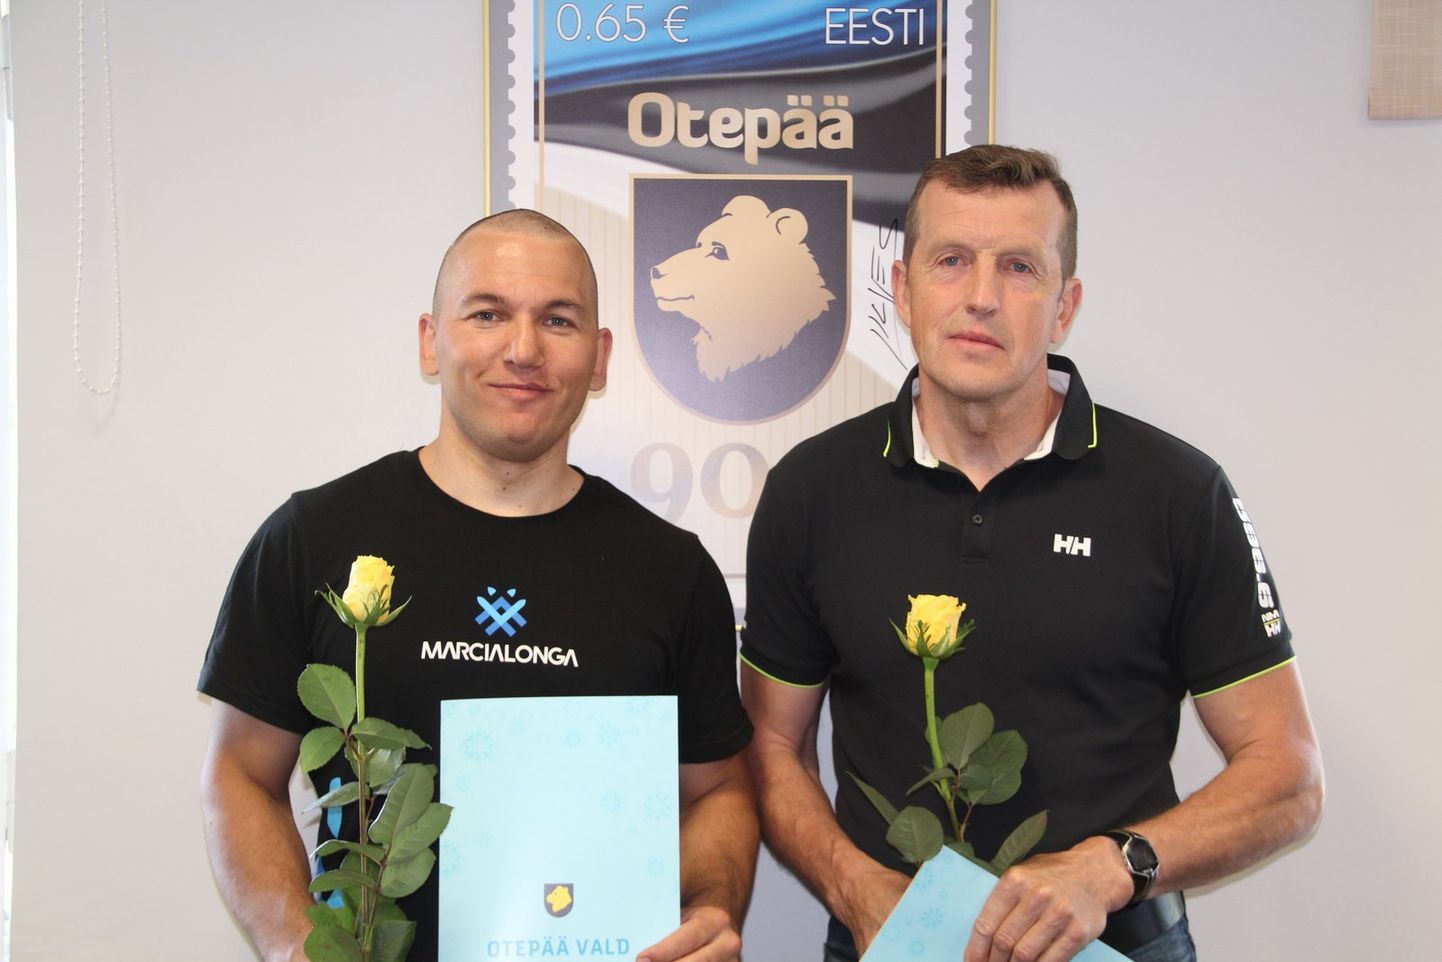 Otepää Vallavalitsus otsustas tunnustada edukate tulemuste eest parasportlast Hans Teearu ja tema treenerit Kalju Ojastet.